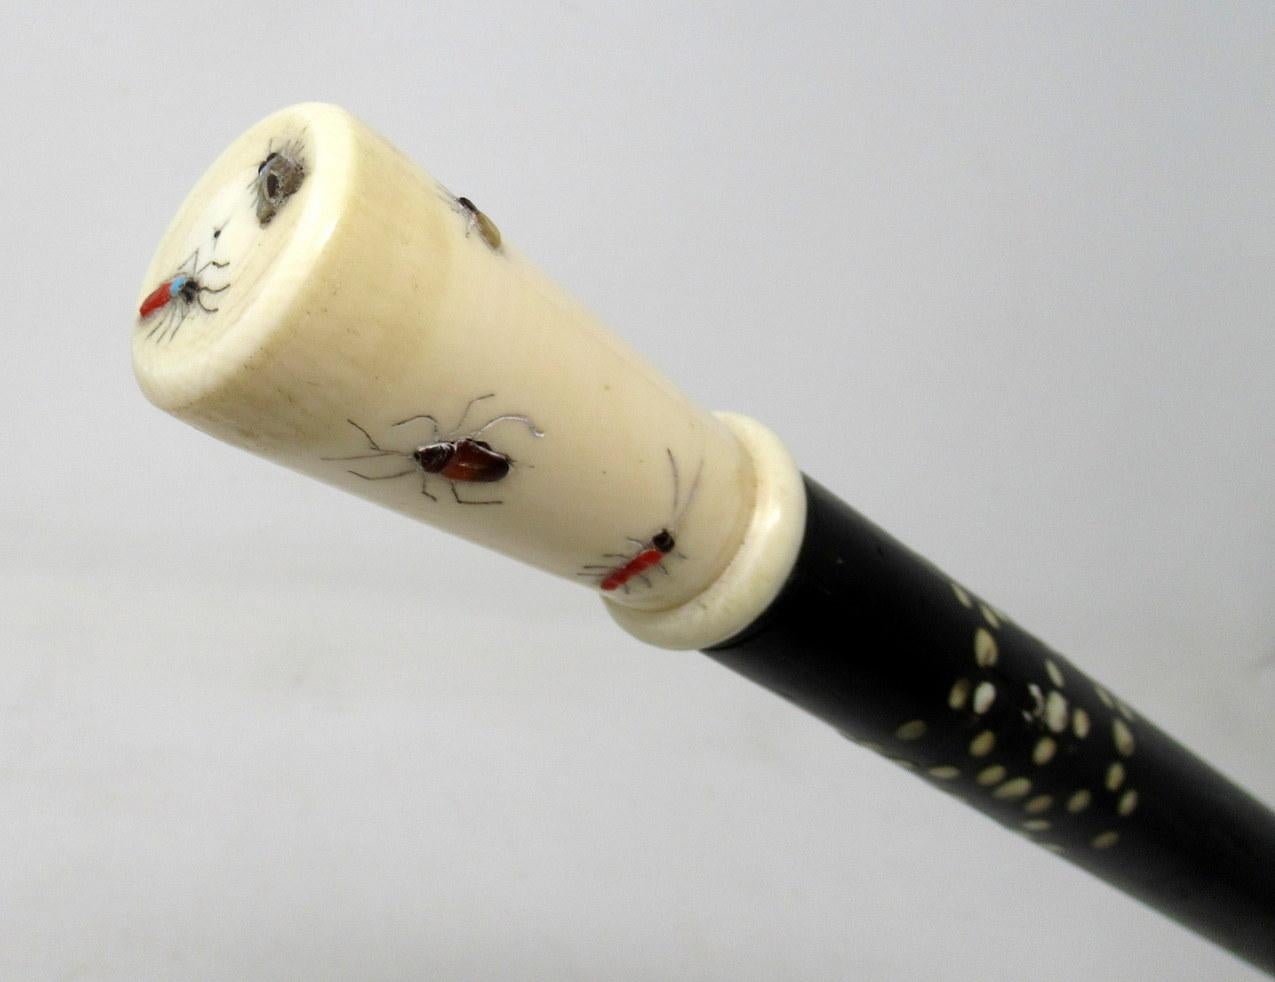 19th Century Antique Vintage Japanese Chinese Shibayama Ebony Wooden Walking Cane Stick